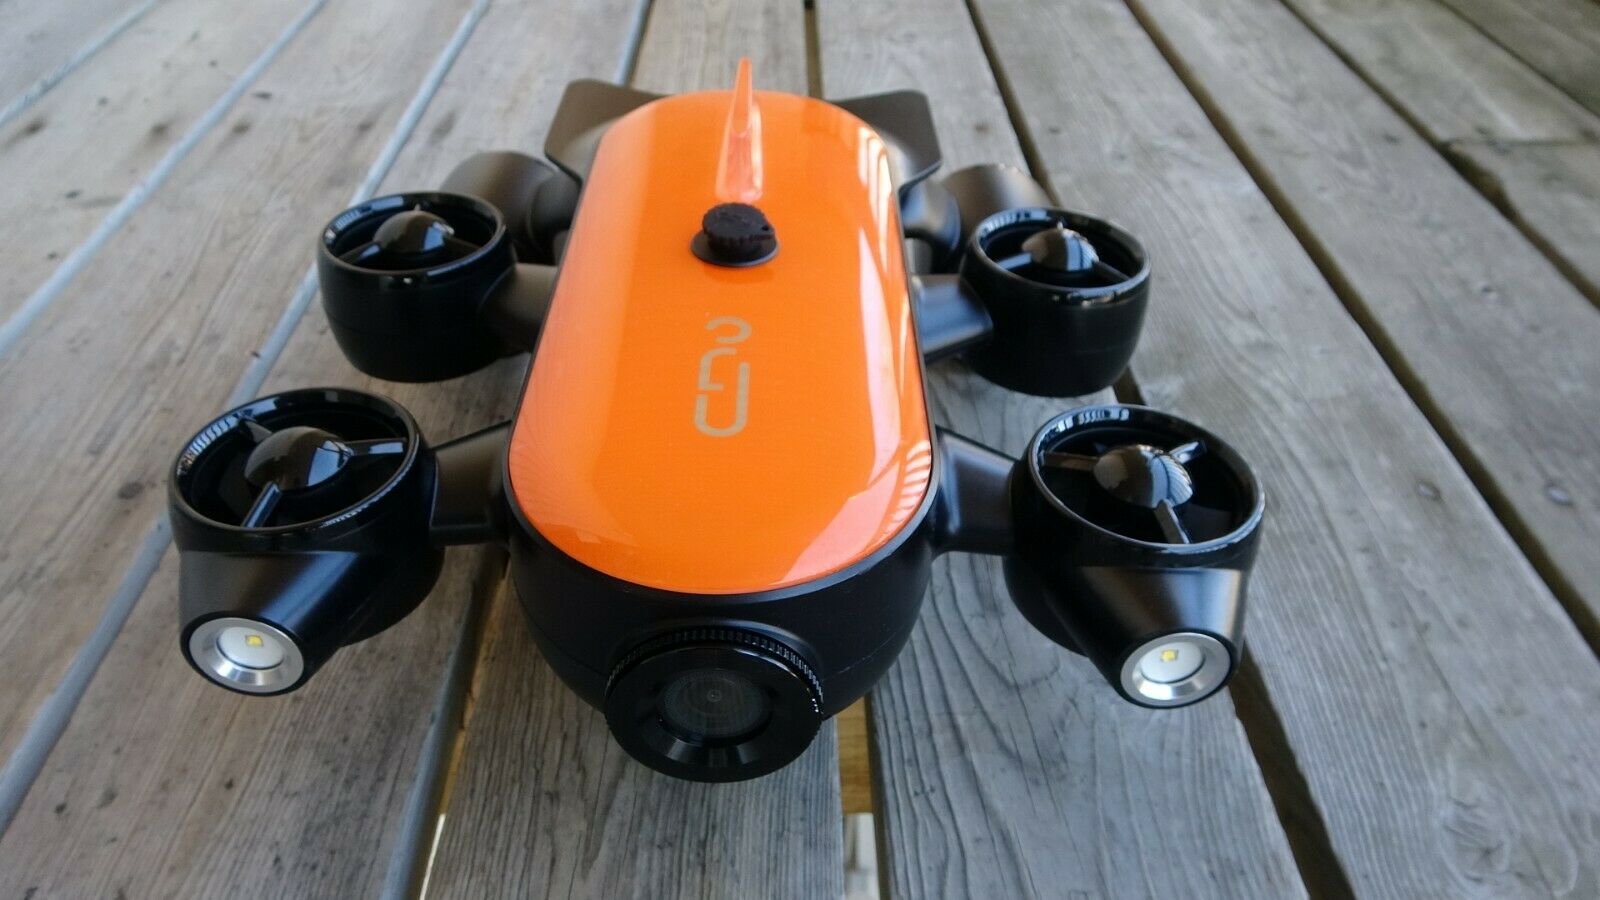 geneinno-titan-underwater-drone-for-sale.jpg